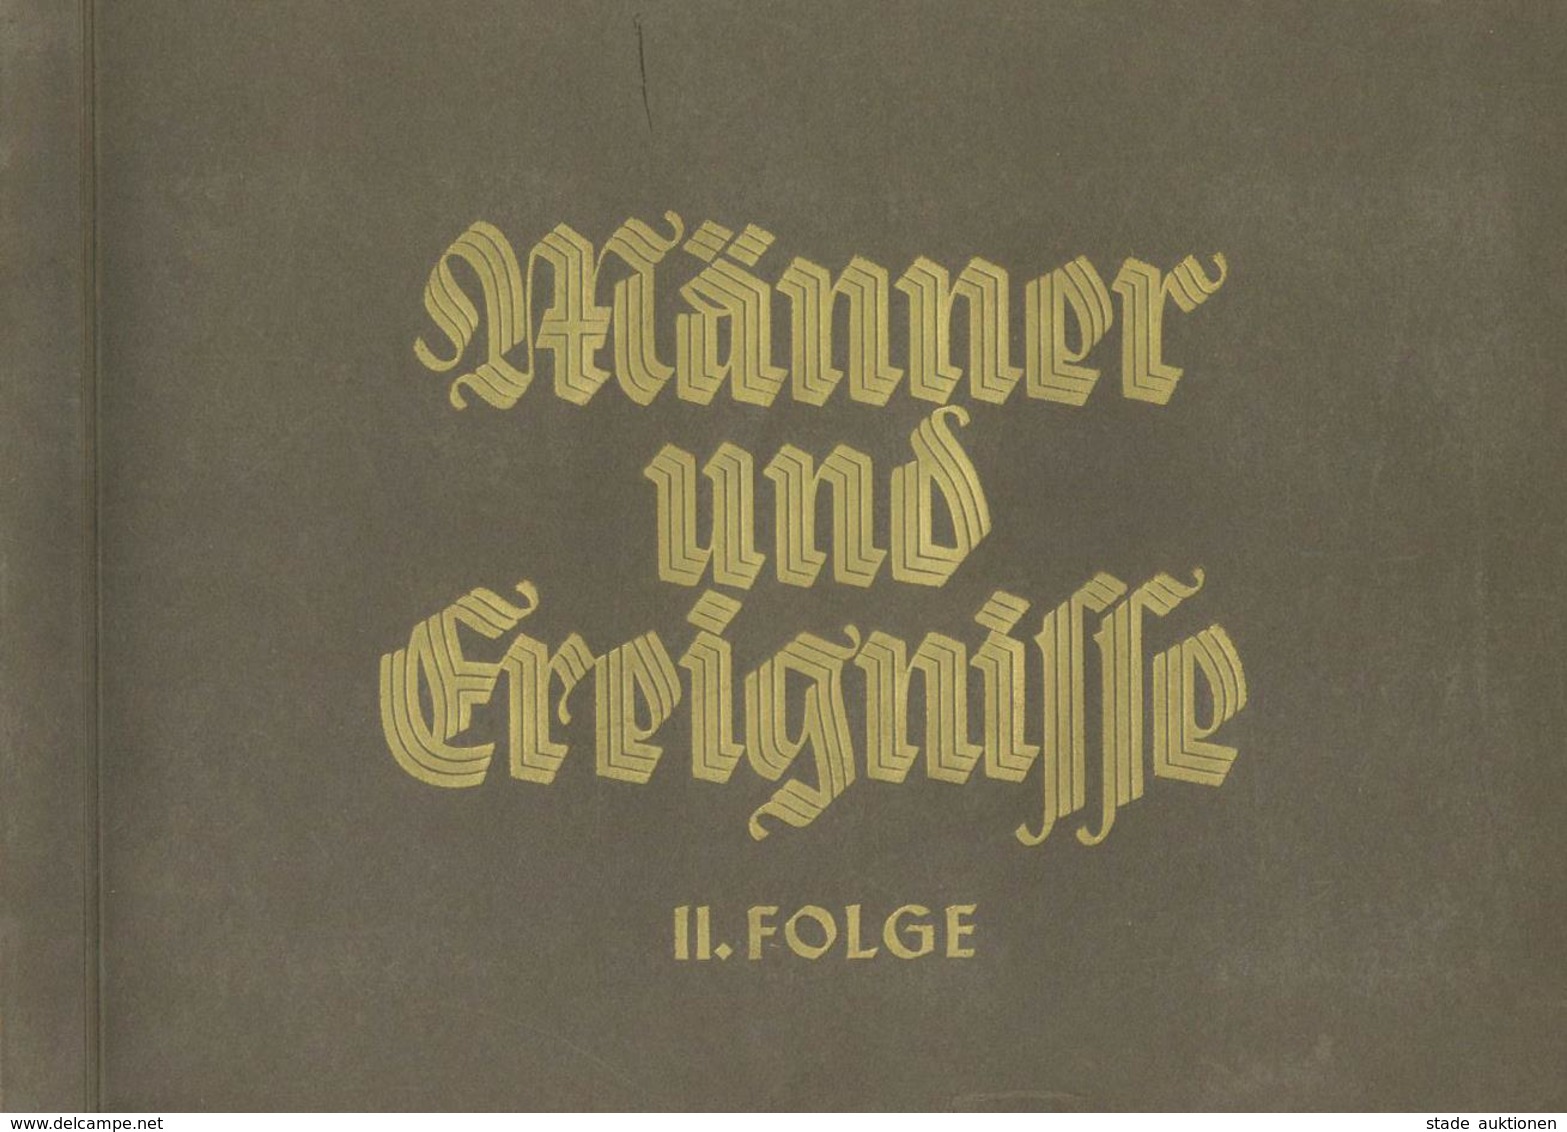 BUCH WK II - ZIGARETTEN-SAMMELBILDER-ALBUM - MÄNNER Und EREIGNISSE Band II - Kpl. I-II - Weltkrieg 1939-45